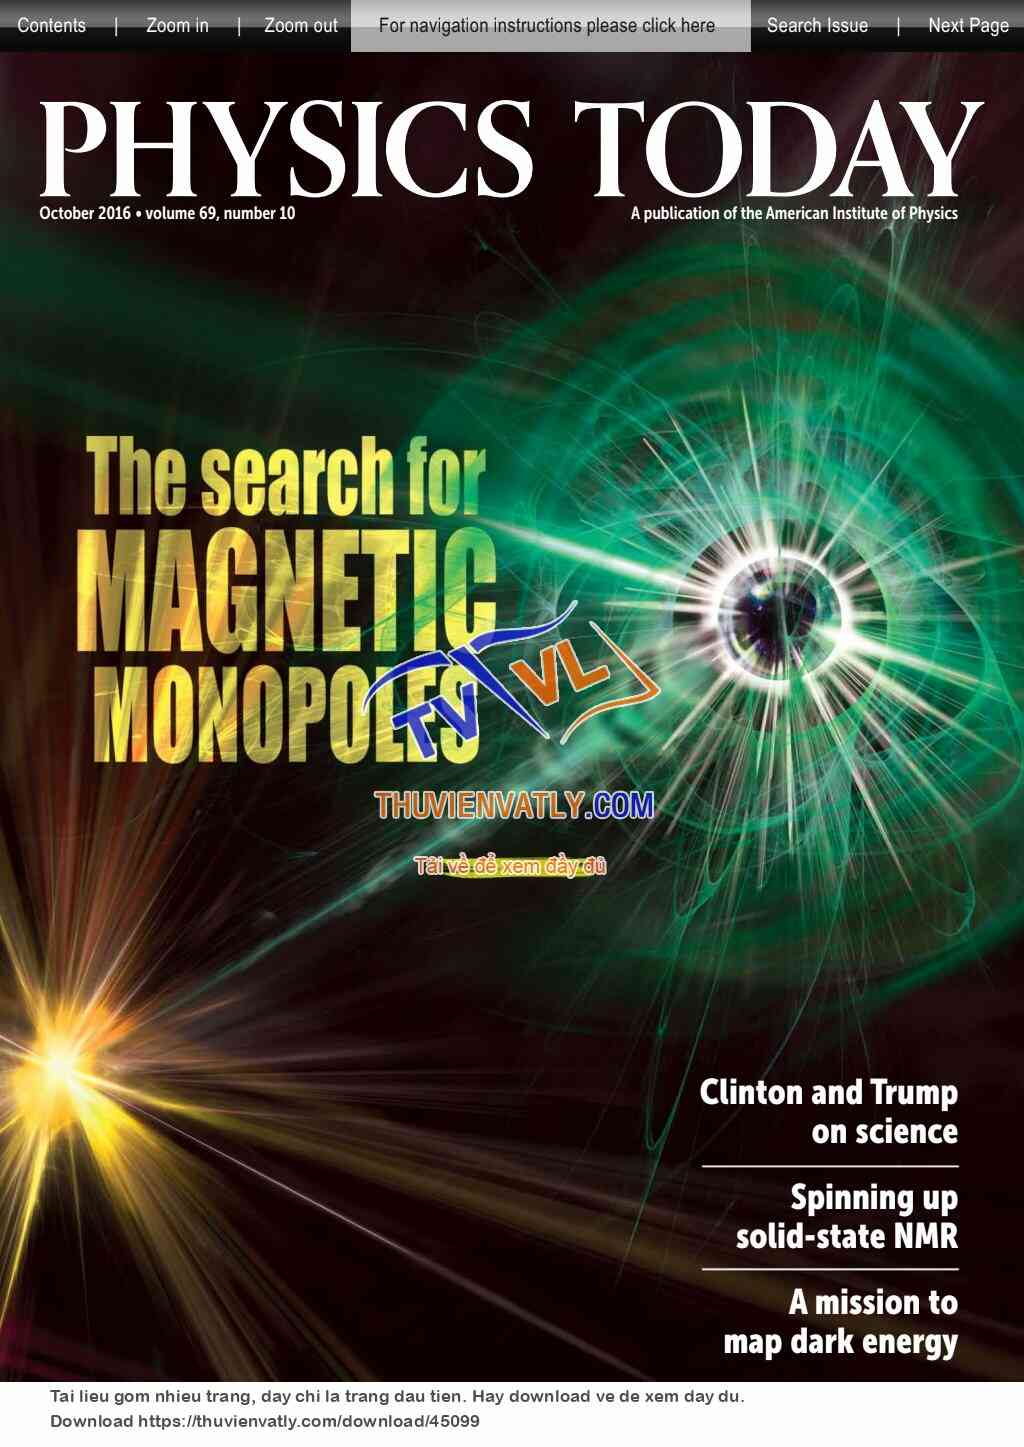 Tạp chí Physics Today tháng 10/2016